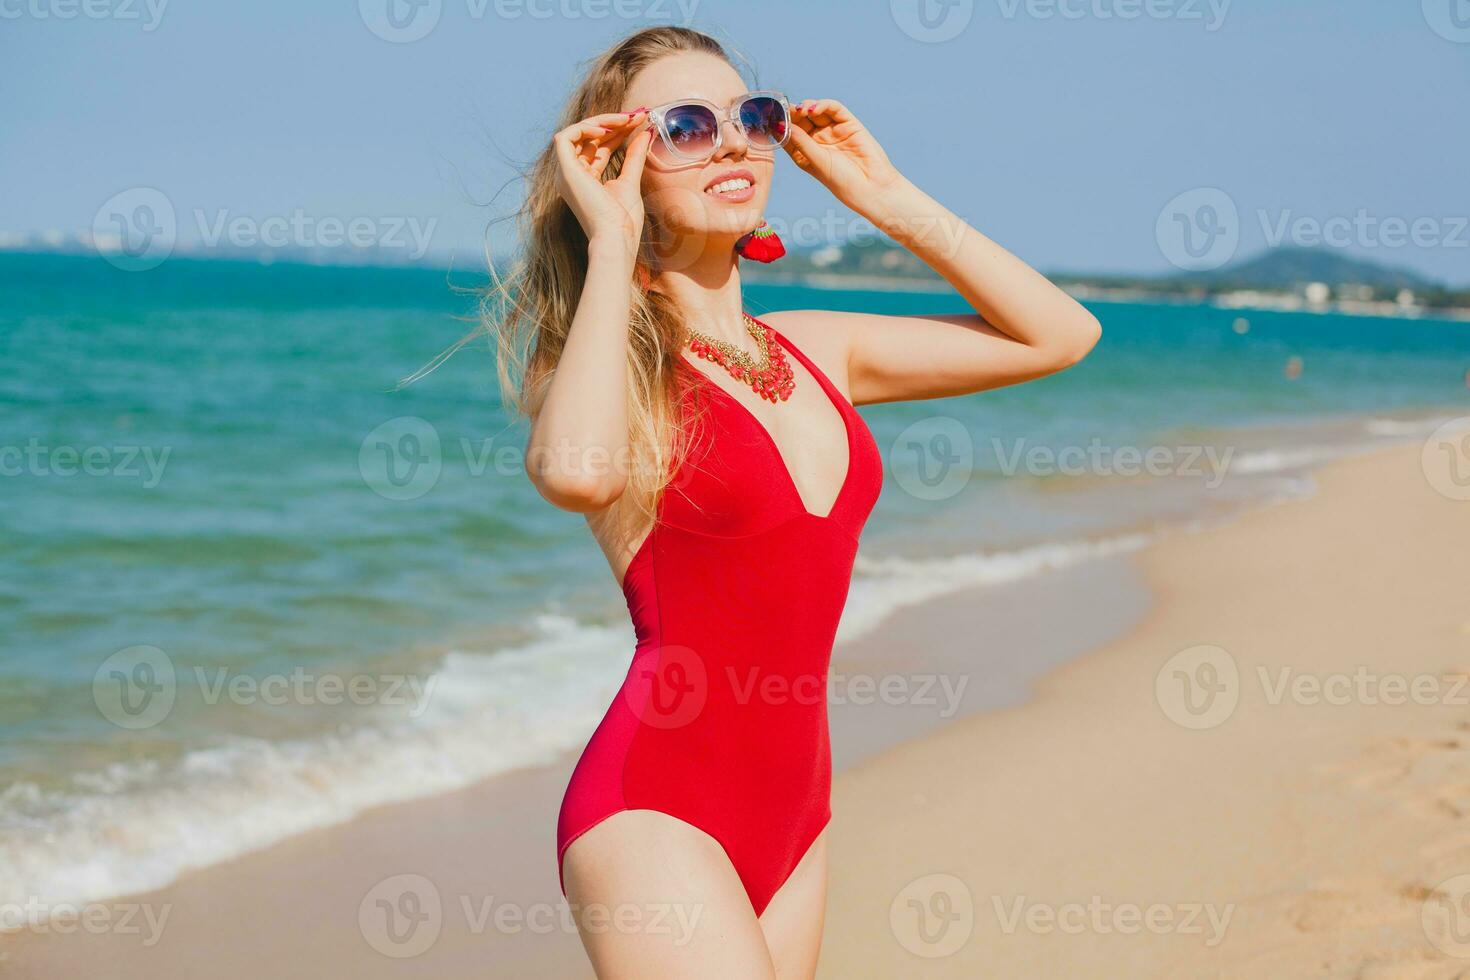 giovane bellissimo biondo donna prendere il sole su spiaggia nel rosso nuoto completo da uomo, occhiali da sole foto